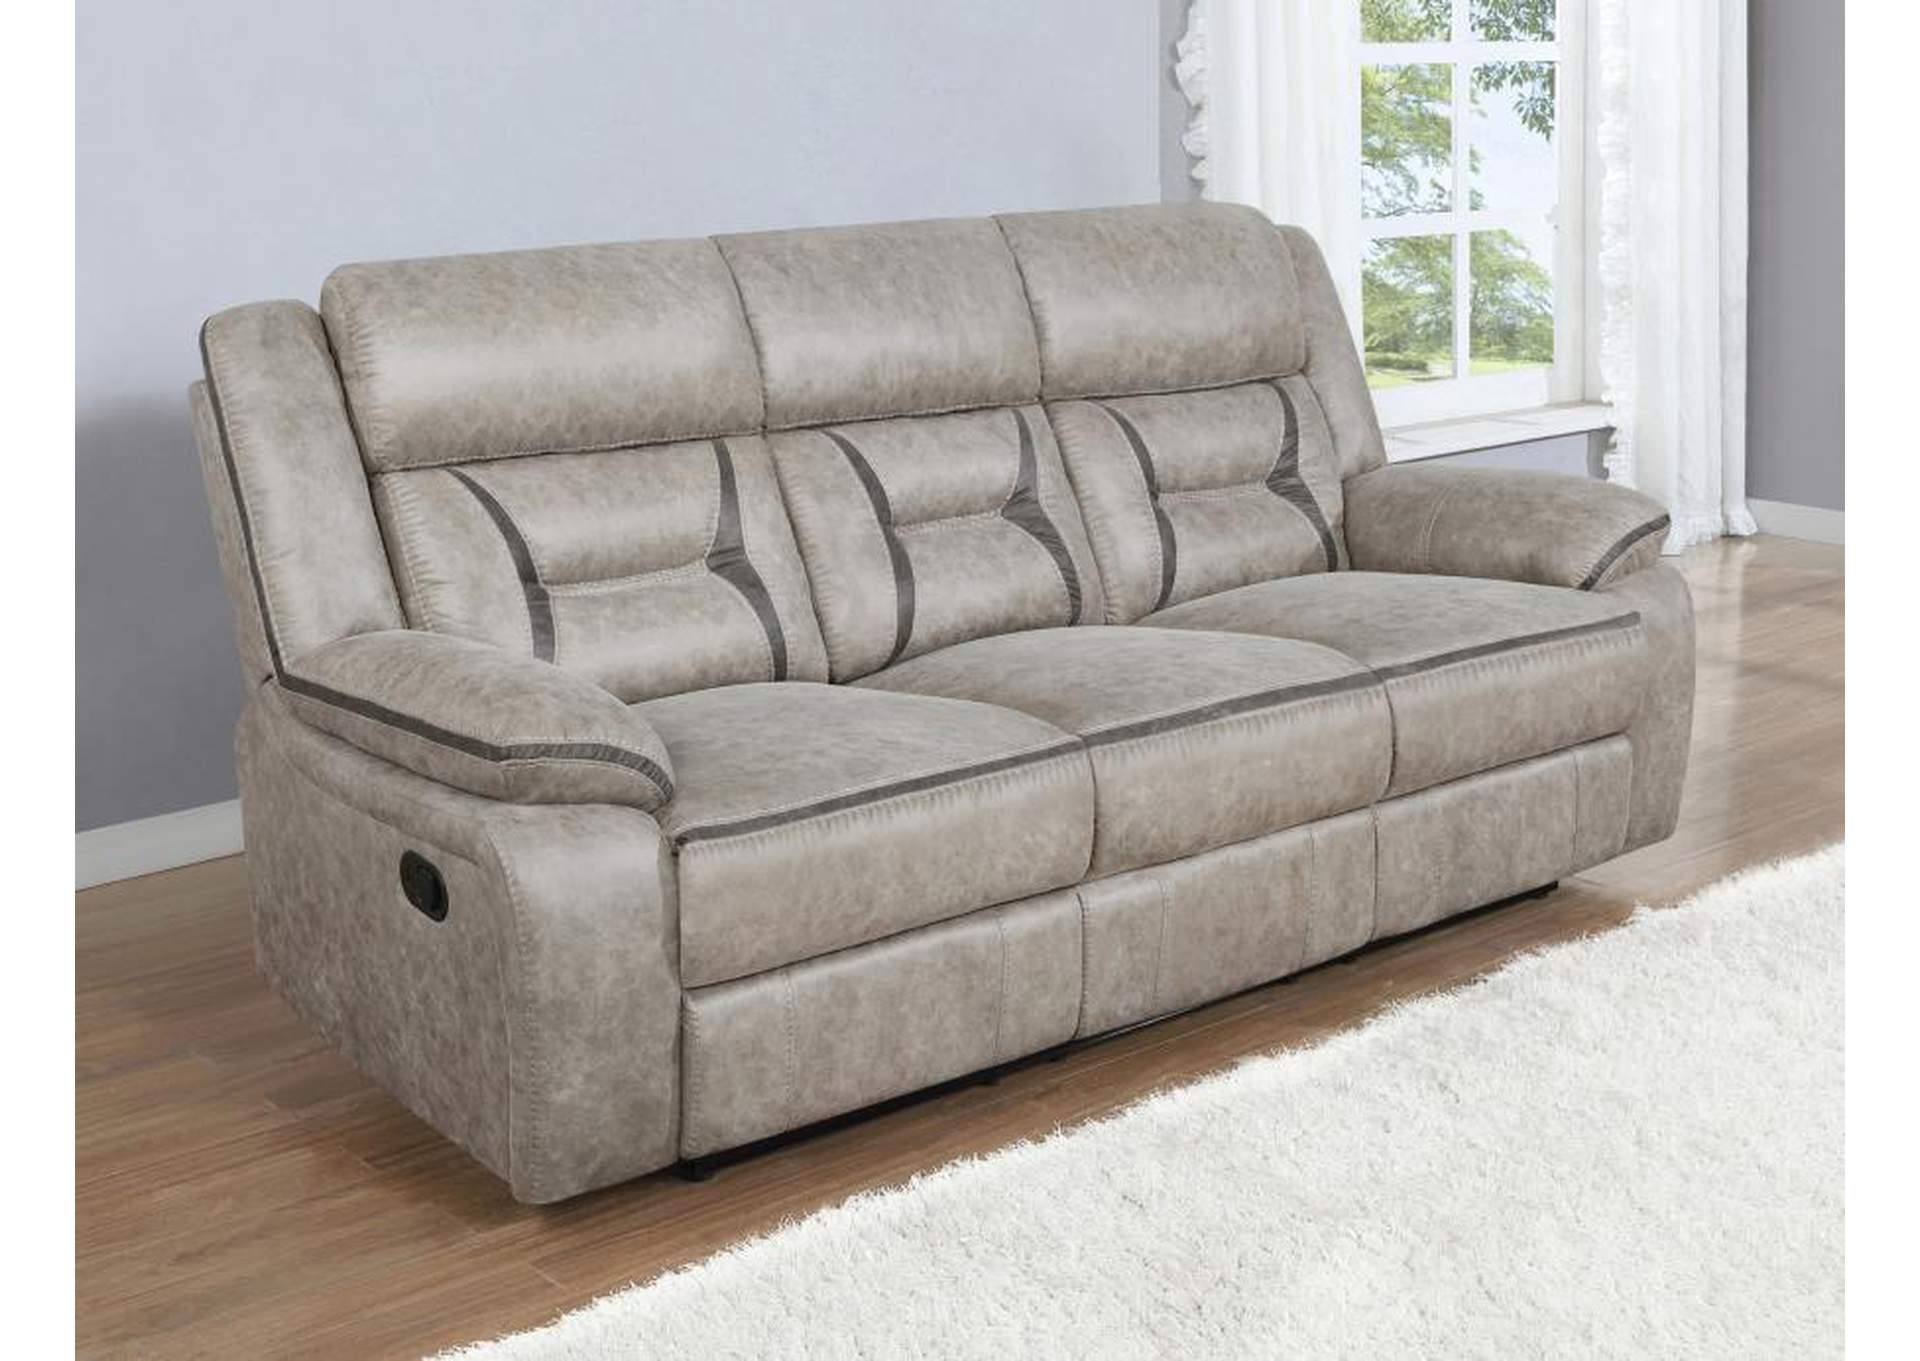 Greer Upholstered Tufted Back Motion Sofa,Coaster Furniture